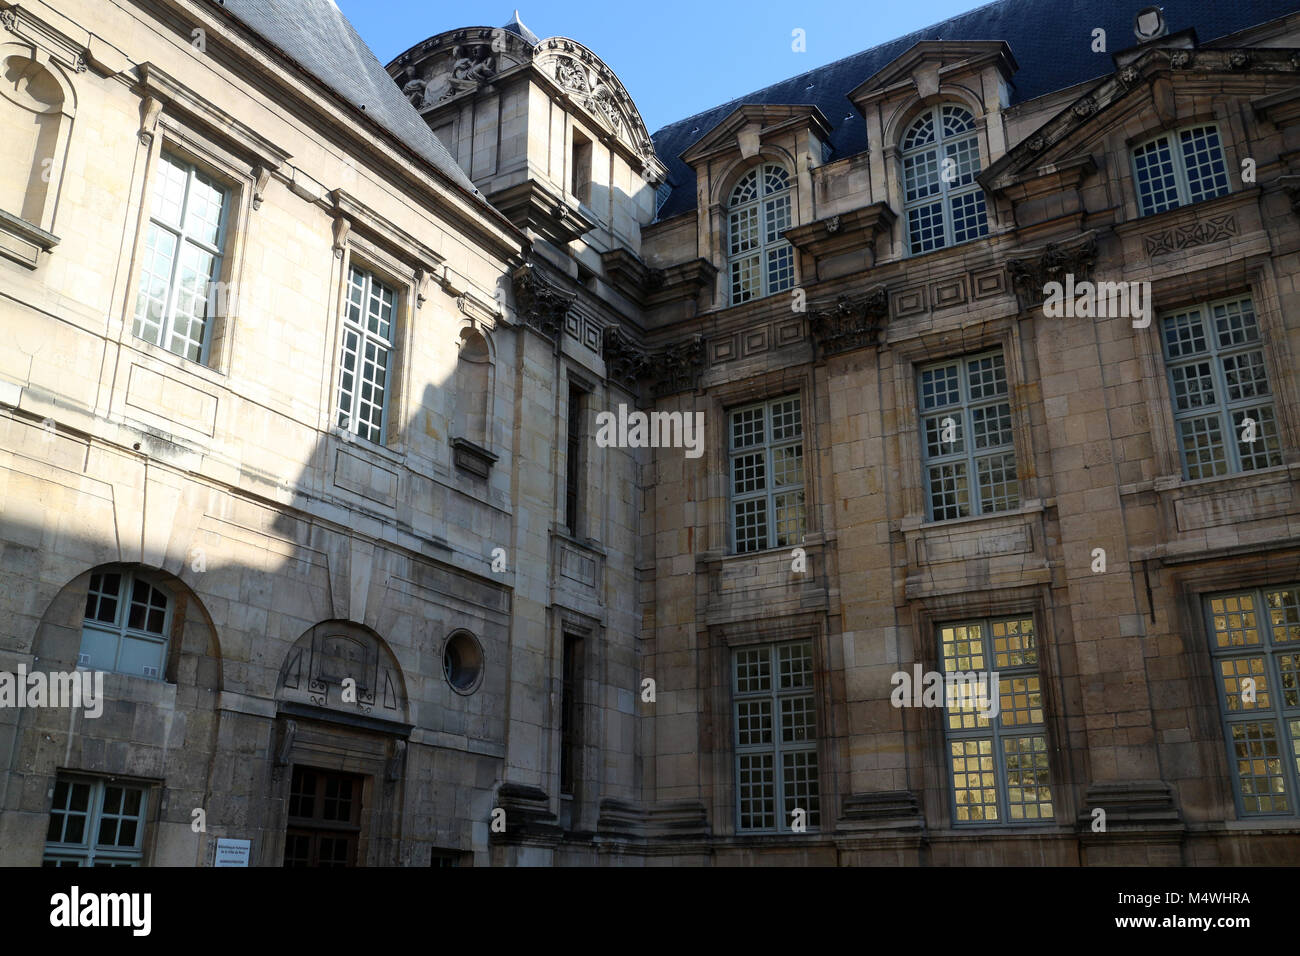 Hôtel d'Angoulême Lamoignon - Bibliotheque historique de la ville de Paris - Rue Pavee - 4th arrondissement - Paris Stock Photo